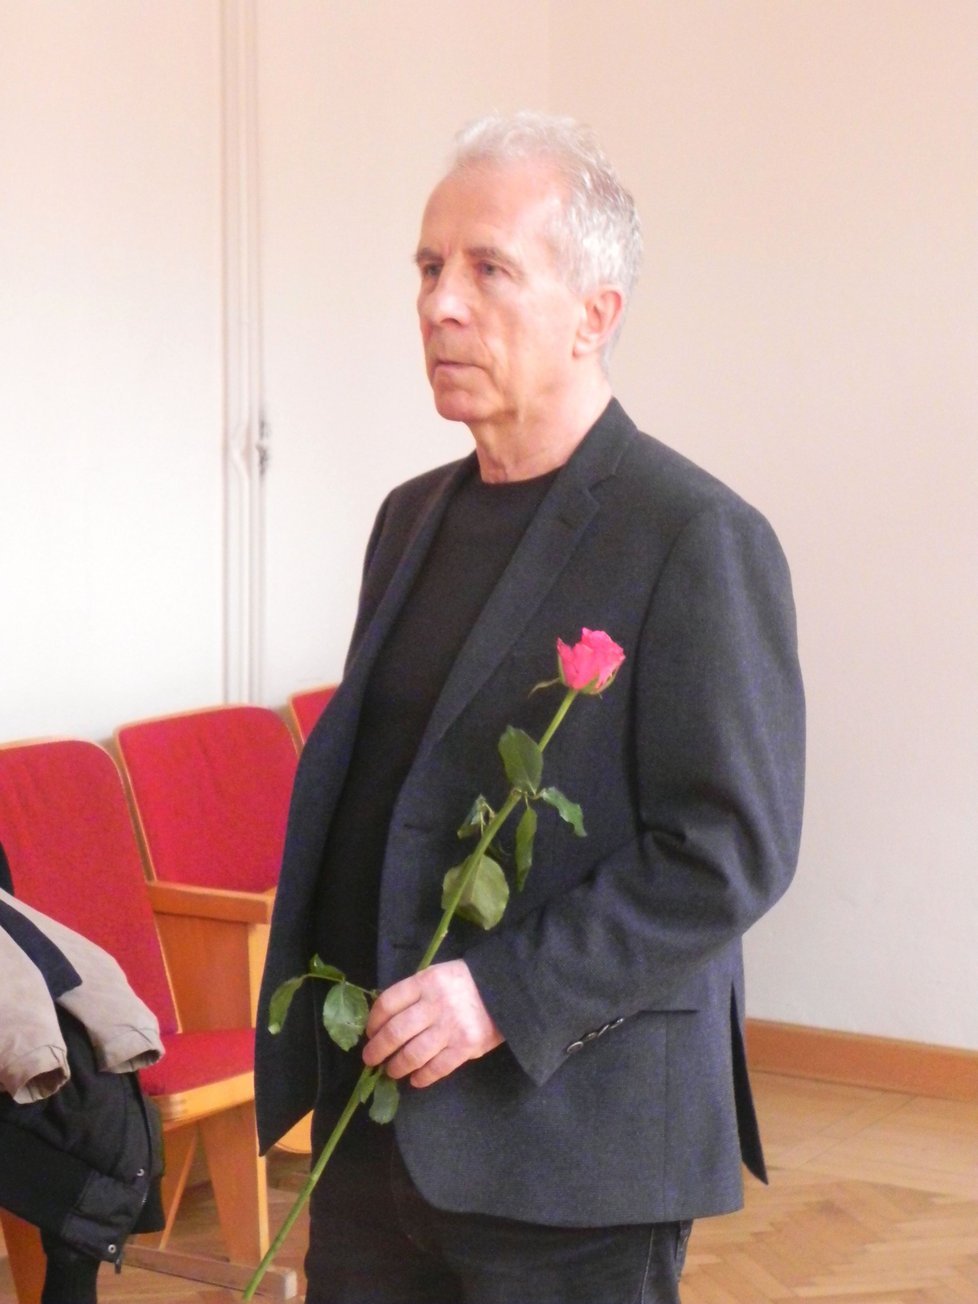 František Divoký chtěl své obžalovaného ženě předat růži při MDŽ. Eskorta to nedovolila. Soud navíc zamítl návrh na propuštění jeho choti z vazby na kauci 5 milionů.